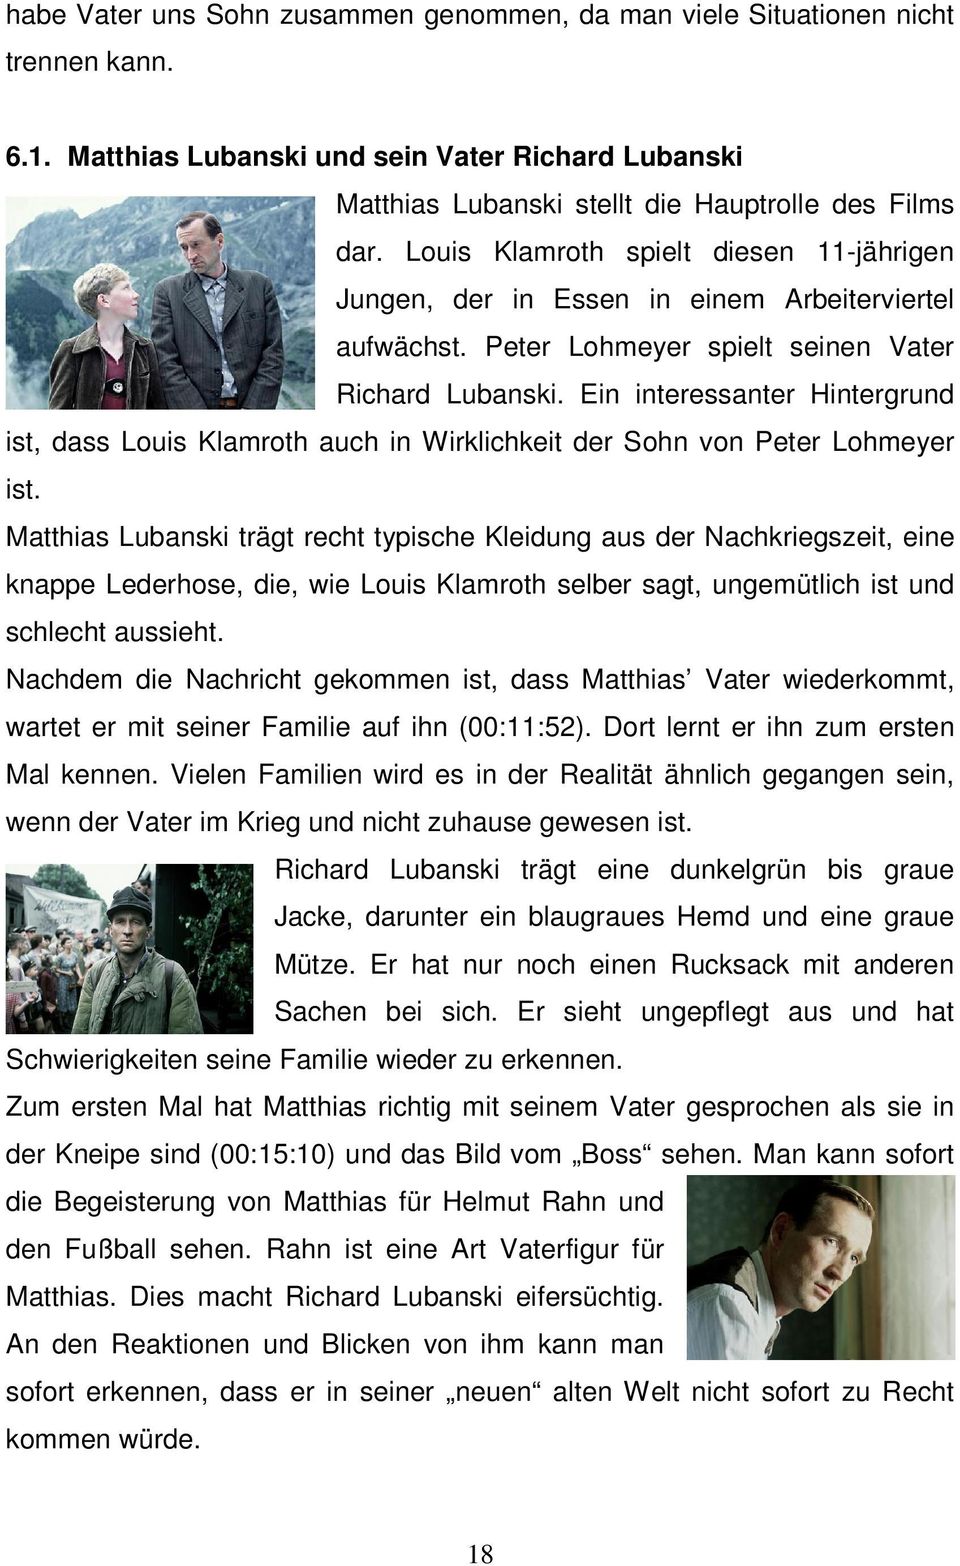 Ein interessanter Hintergrund ist, dass Louis Klamroth auch in Wirklichkeit der Sohn von Peter Lohmeyer ist.